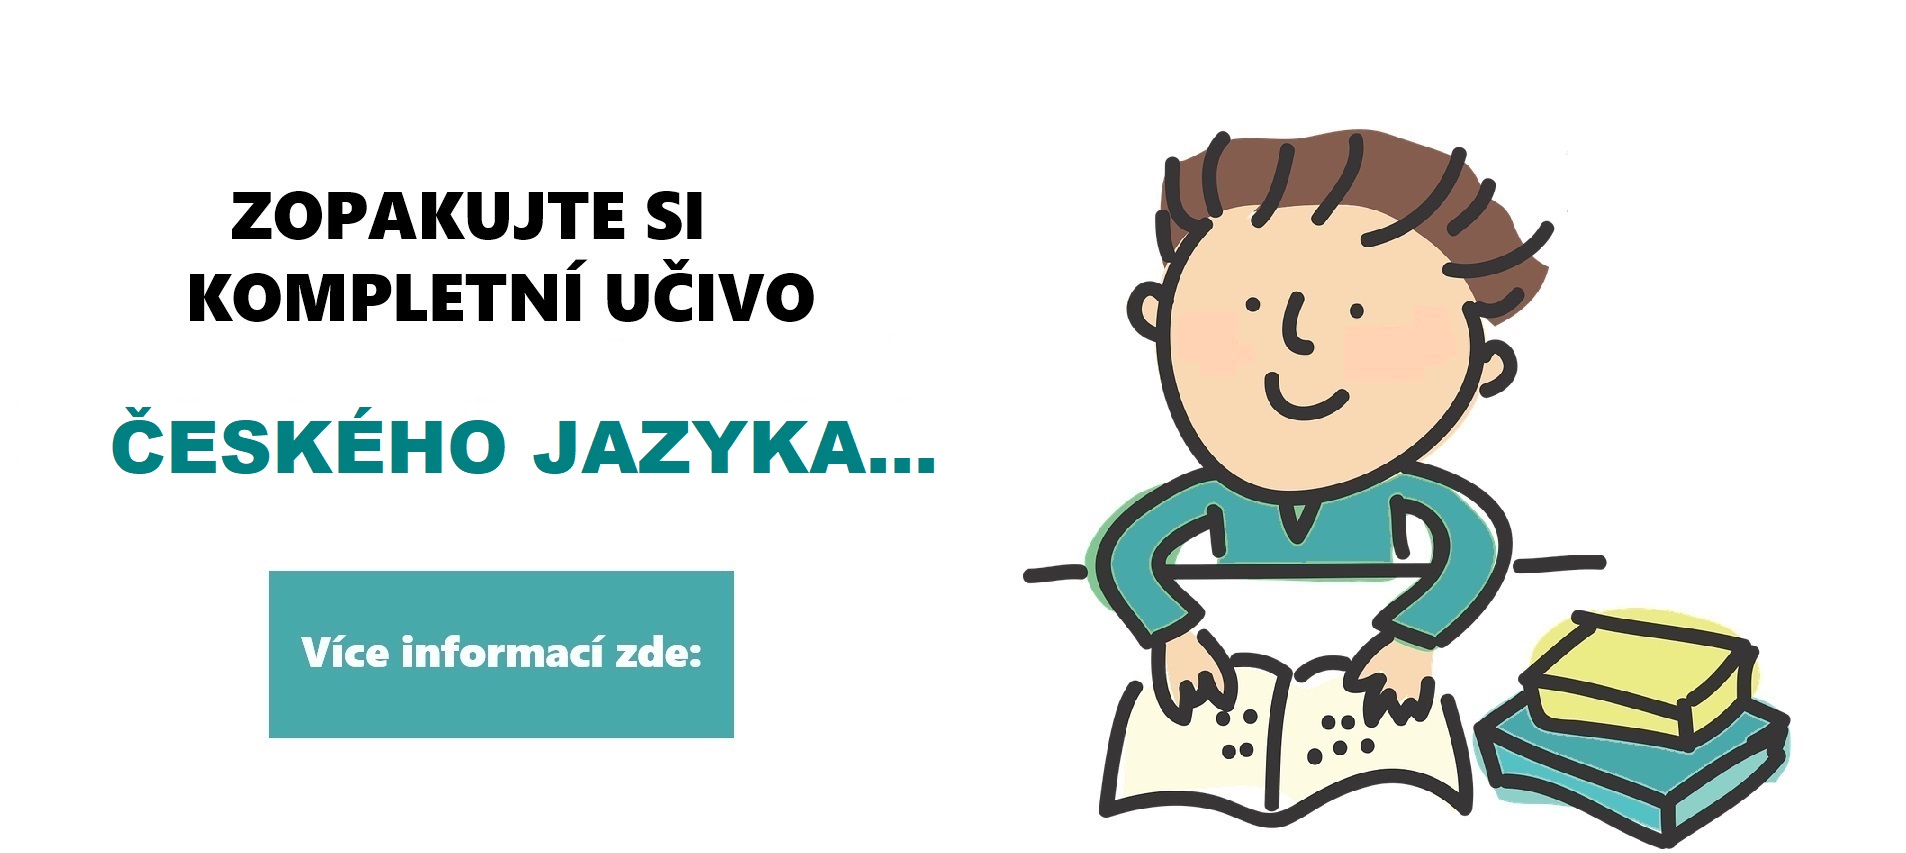 Český jazyk pro základní školy